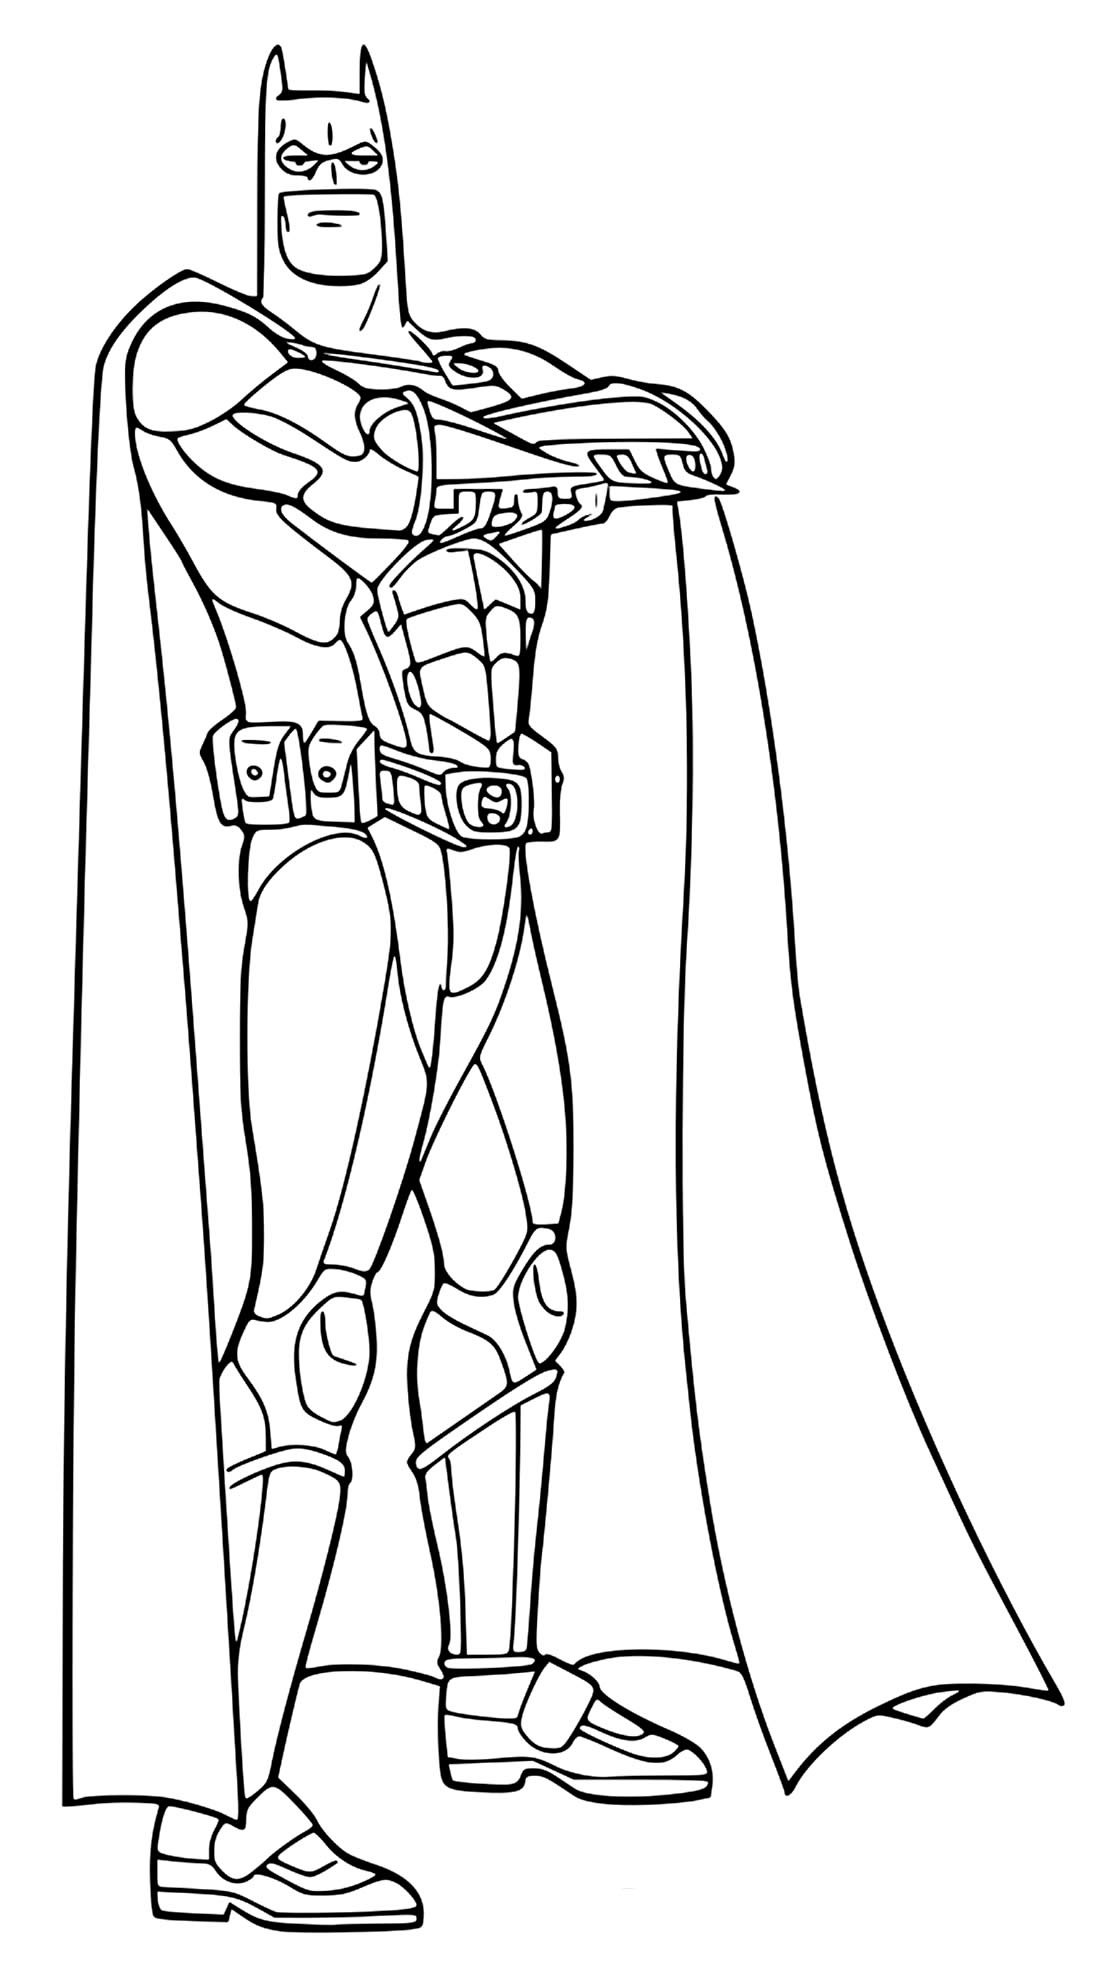 Desenho para colorir do Batman